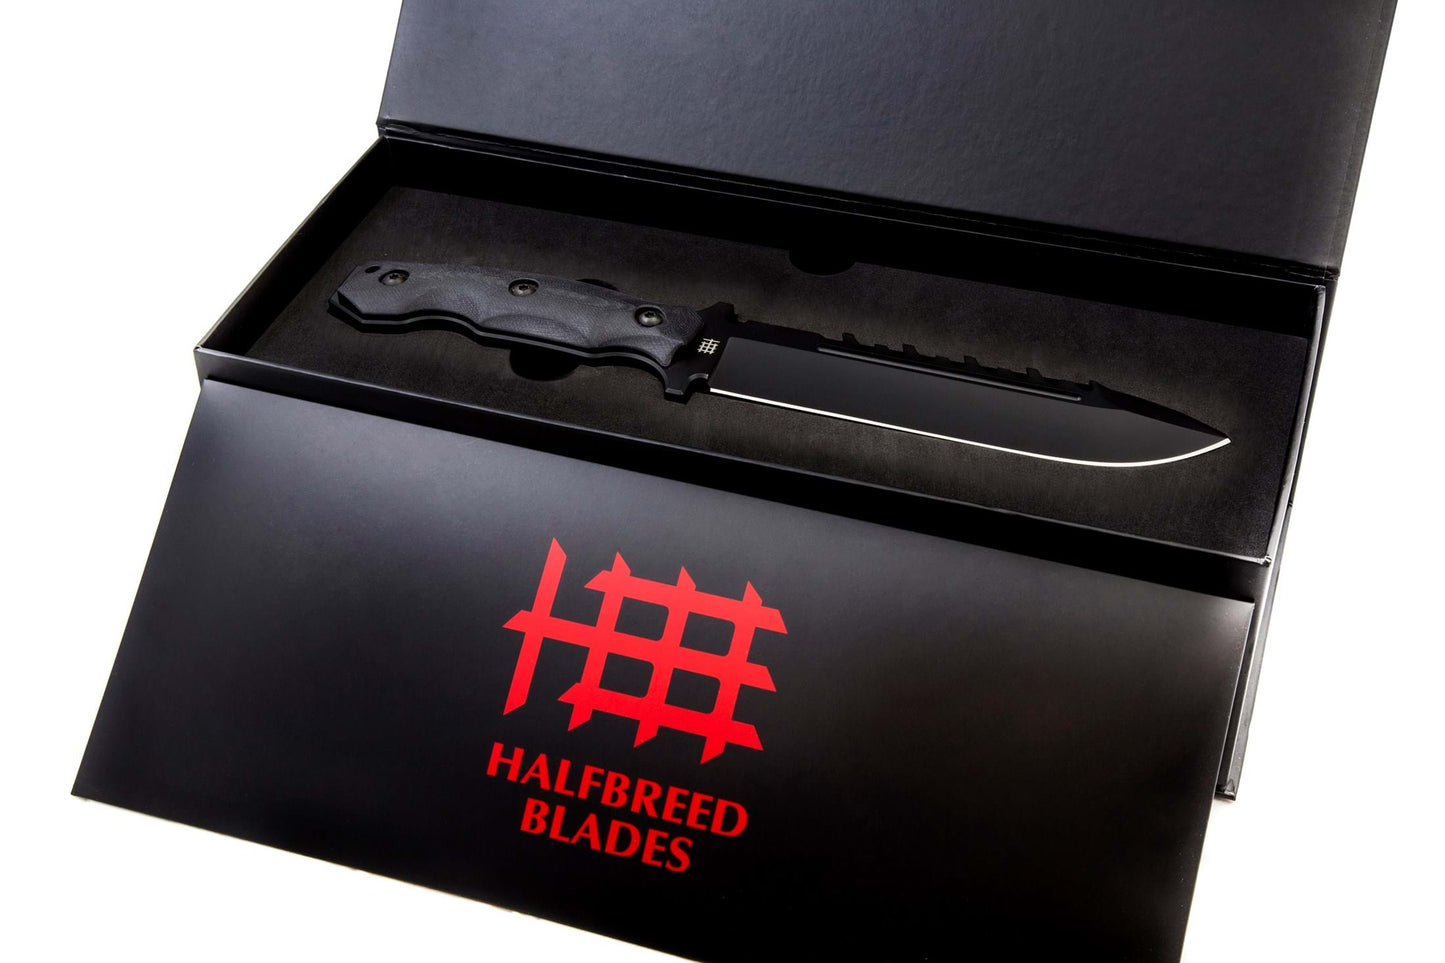 Halfbreed Blades LSK-01 Black Large Survival Knife K110/D2